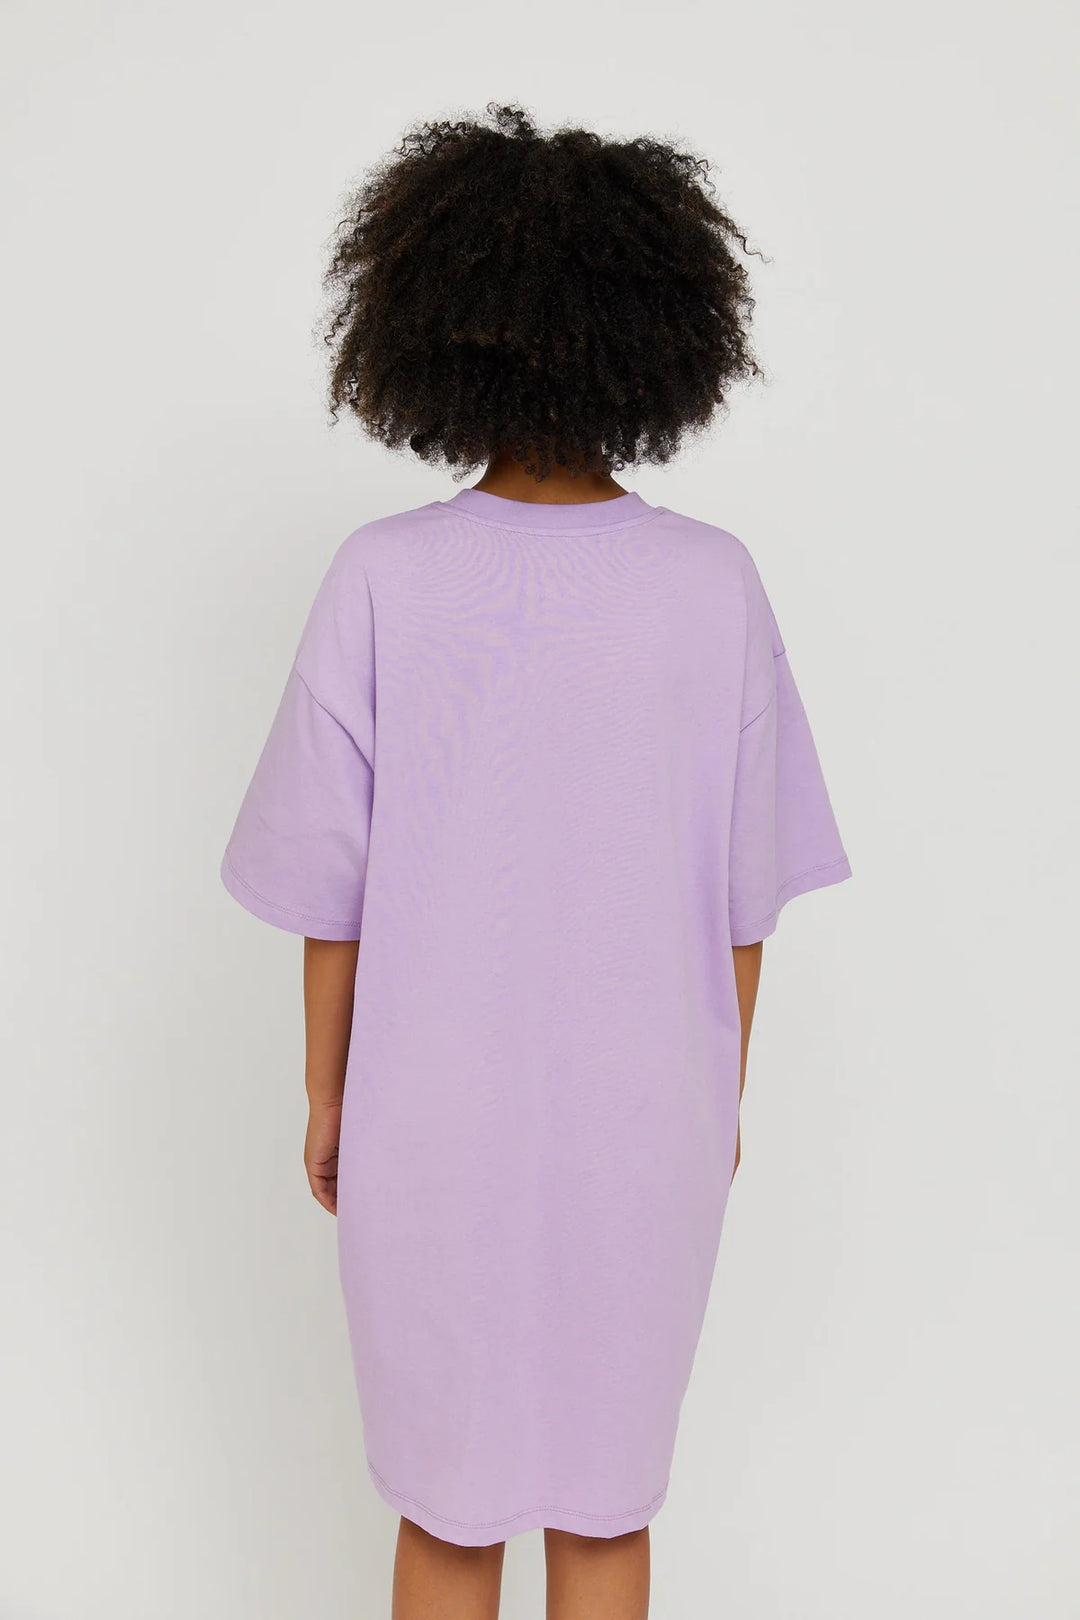 Sano Shirt Dress - lavender